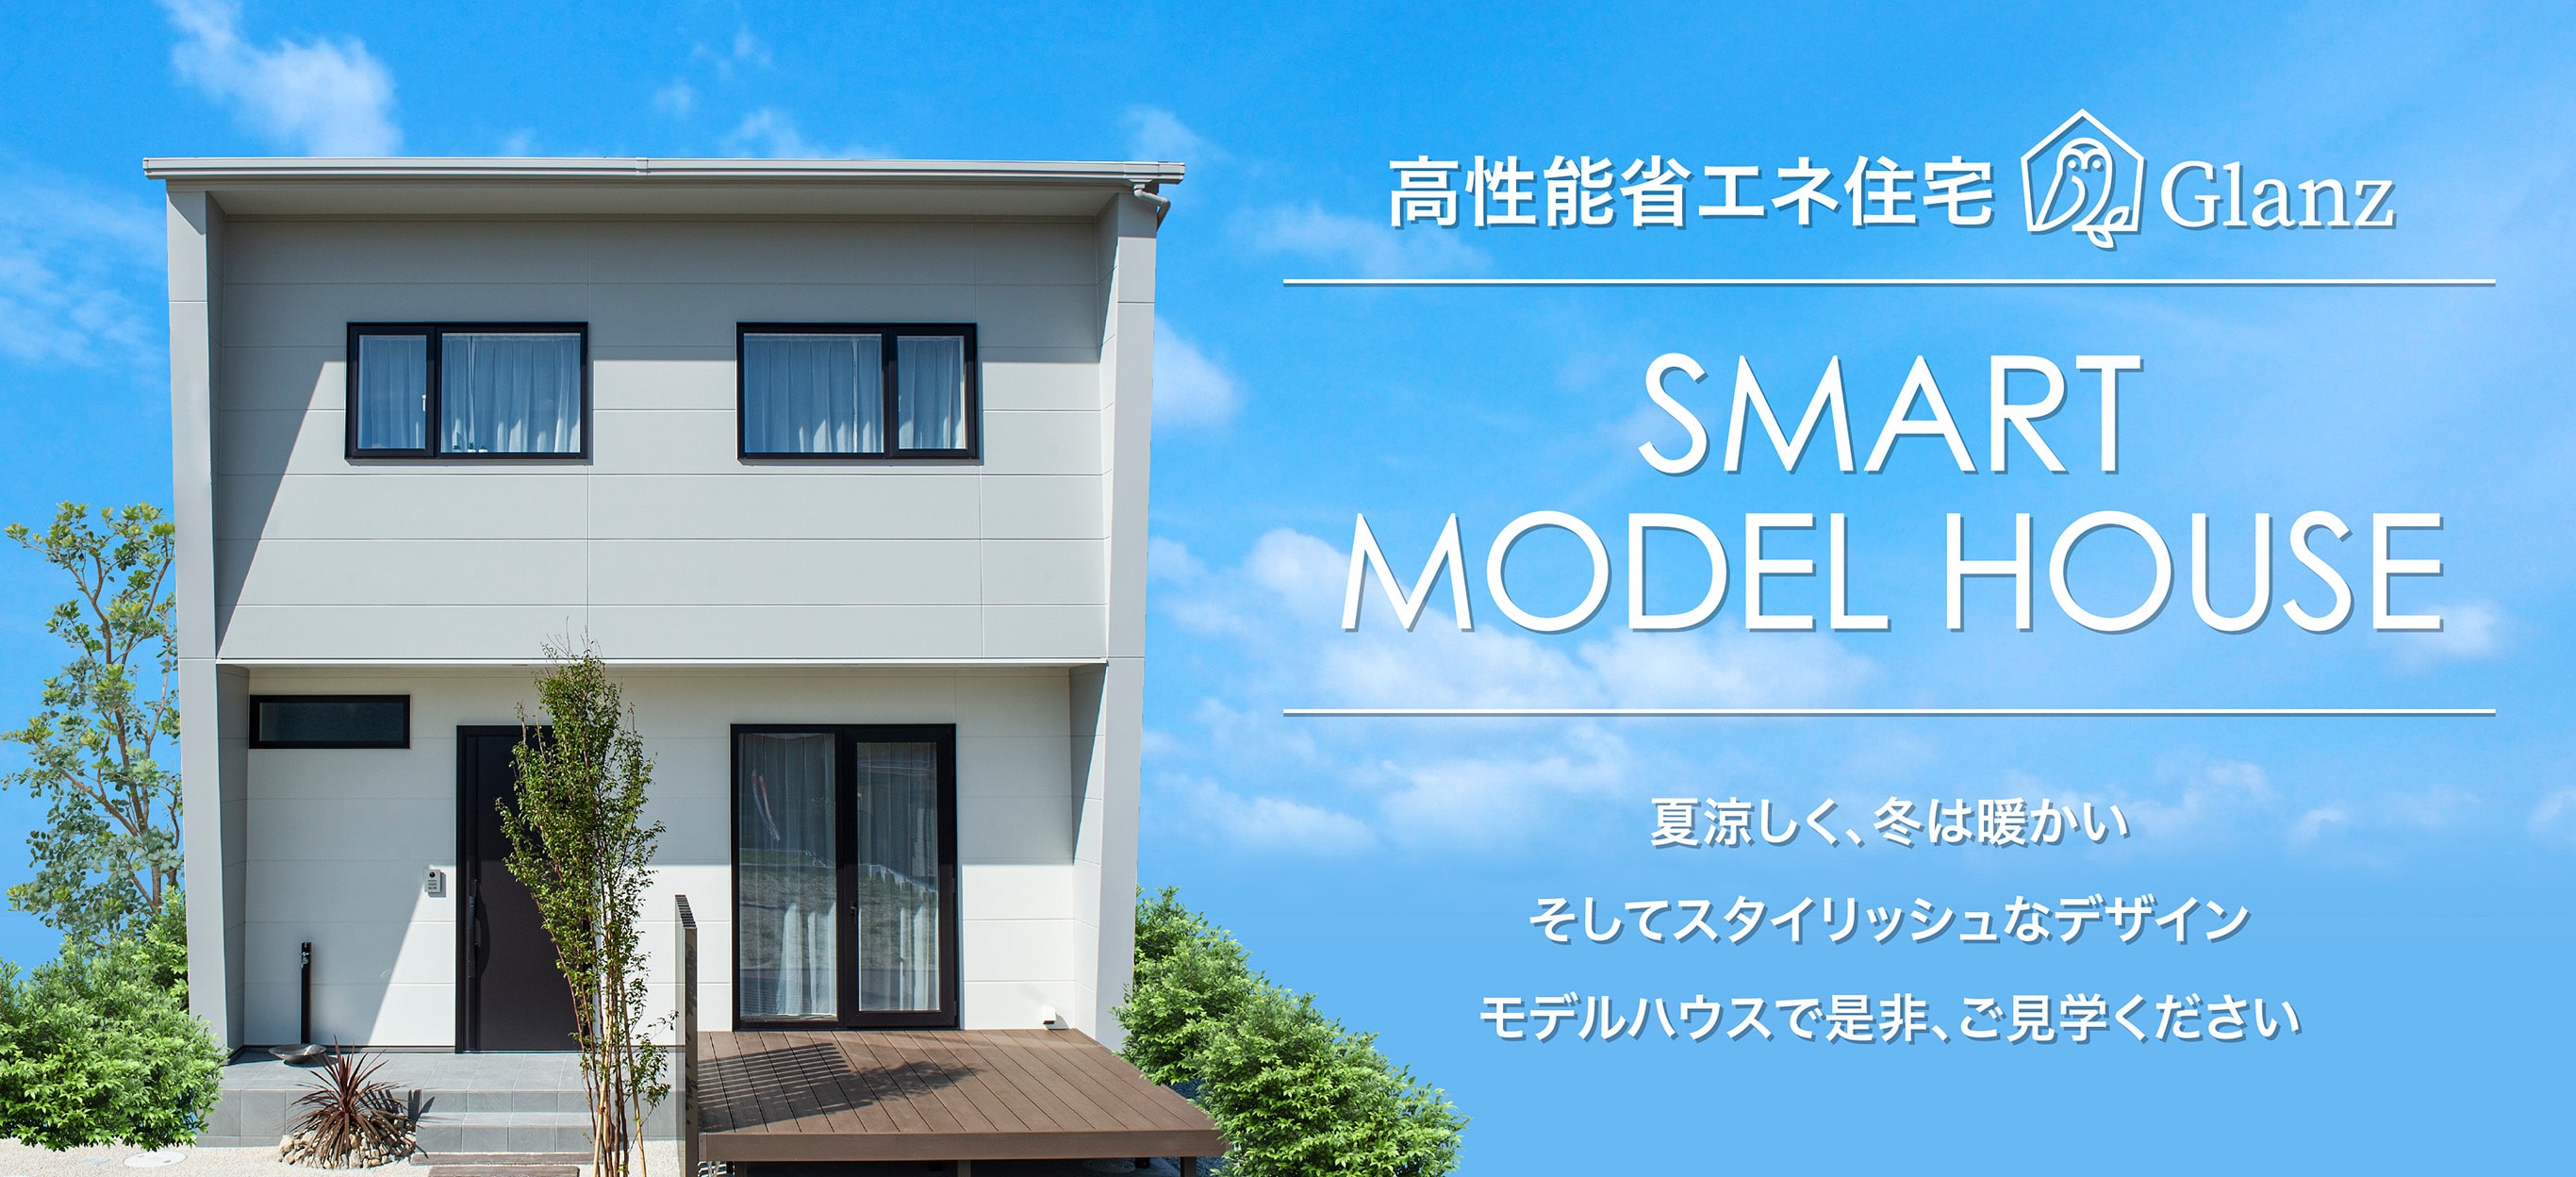 高性能省エネ住宅Glanz SMART MODEL HOUSE 夏涼しく、冬は暖かい そしてスタイリッシュなデザイン モデルハウスで是非、ご見学ください